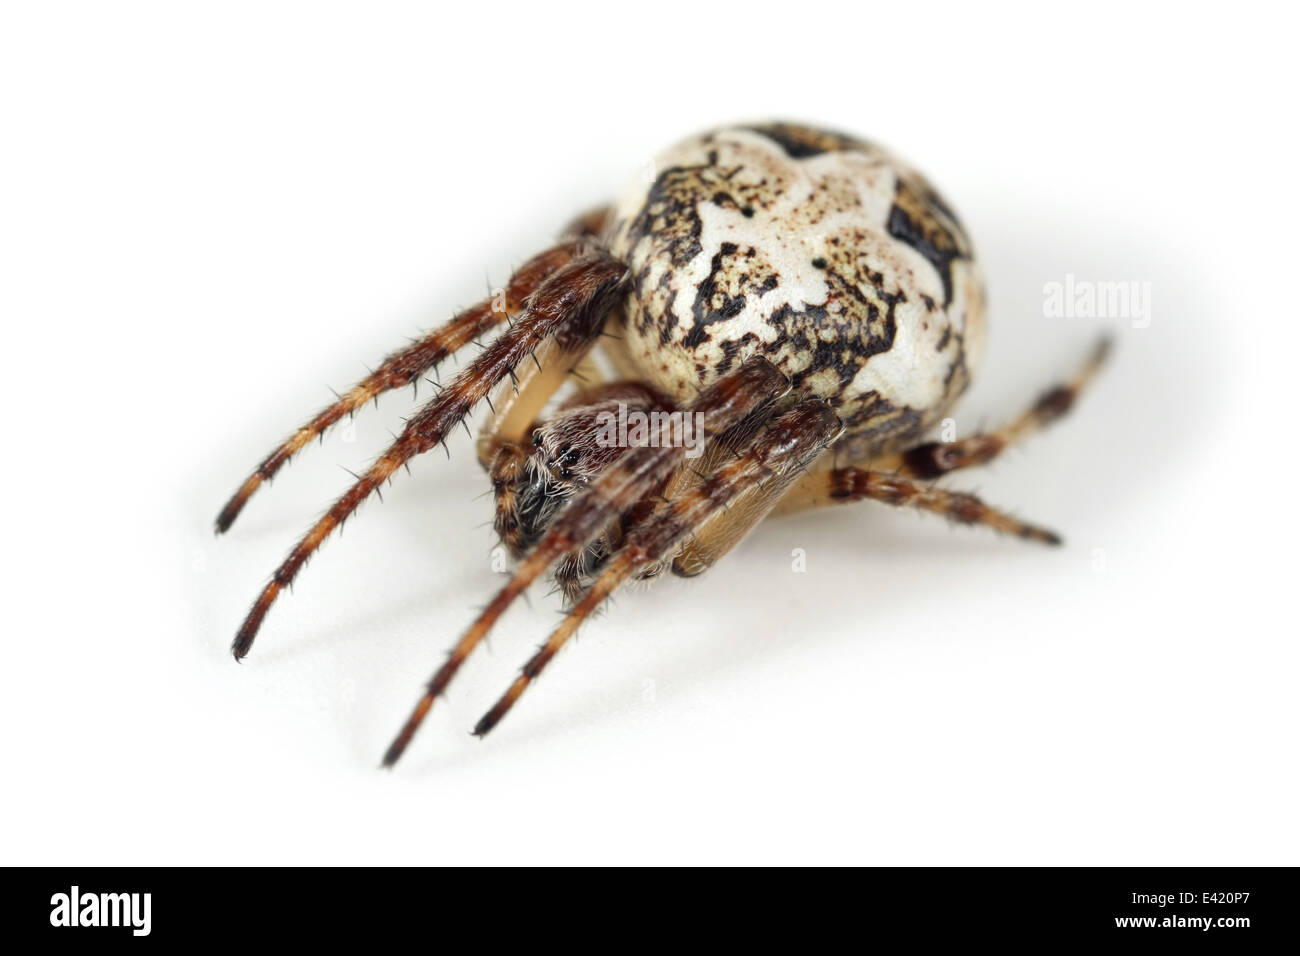 Weibliche Furche Orb-Weaver (Larinioides Cornutus) Spinne, Teil der Familie Araneidae - Orbweavers. Isoliert auf weißem Hintergrund Stockfoto